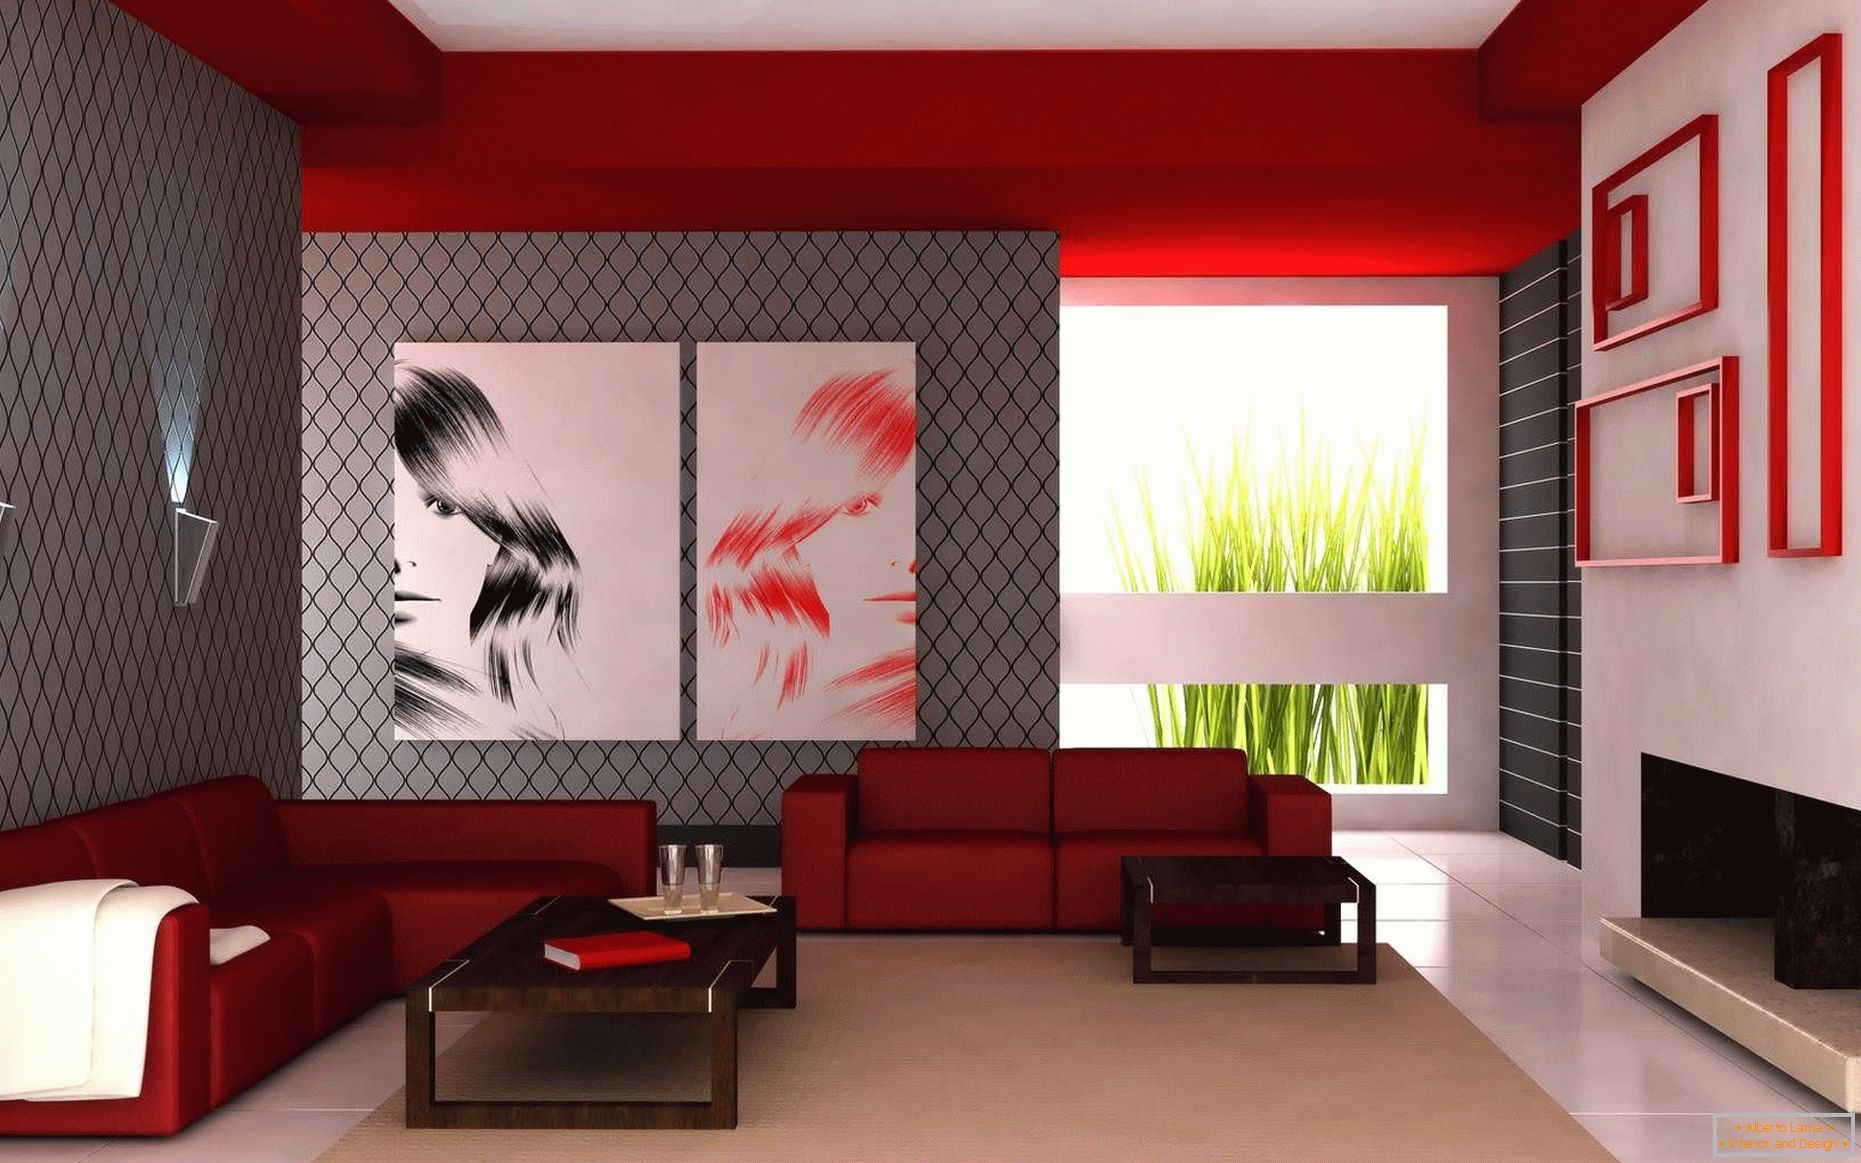 La combinación de colores blanco, rojo y gris en la sala de estar